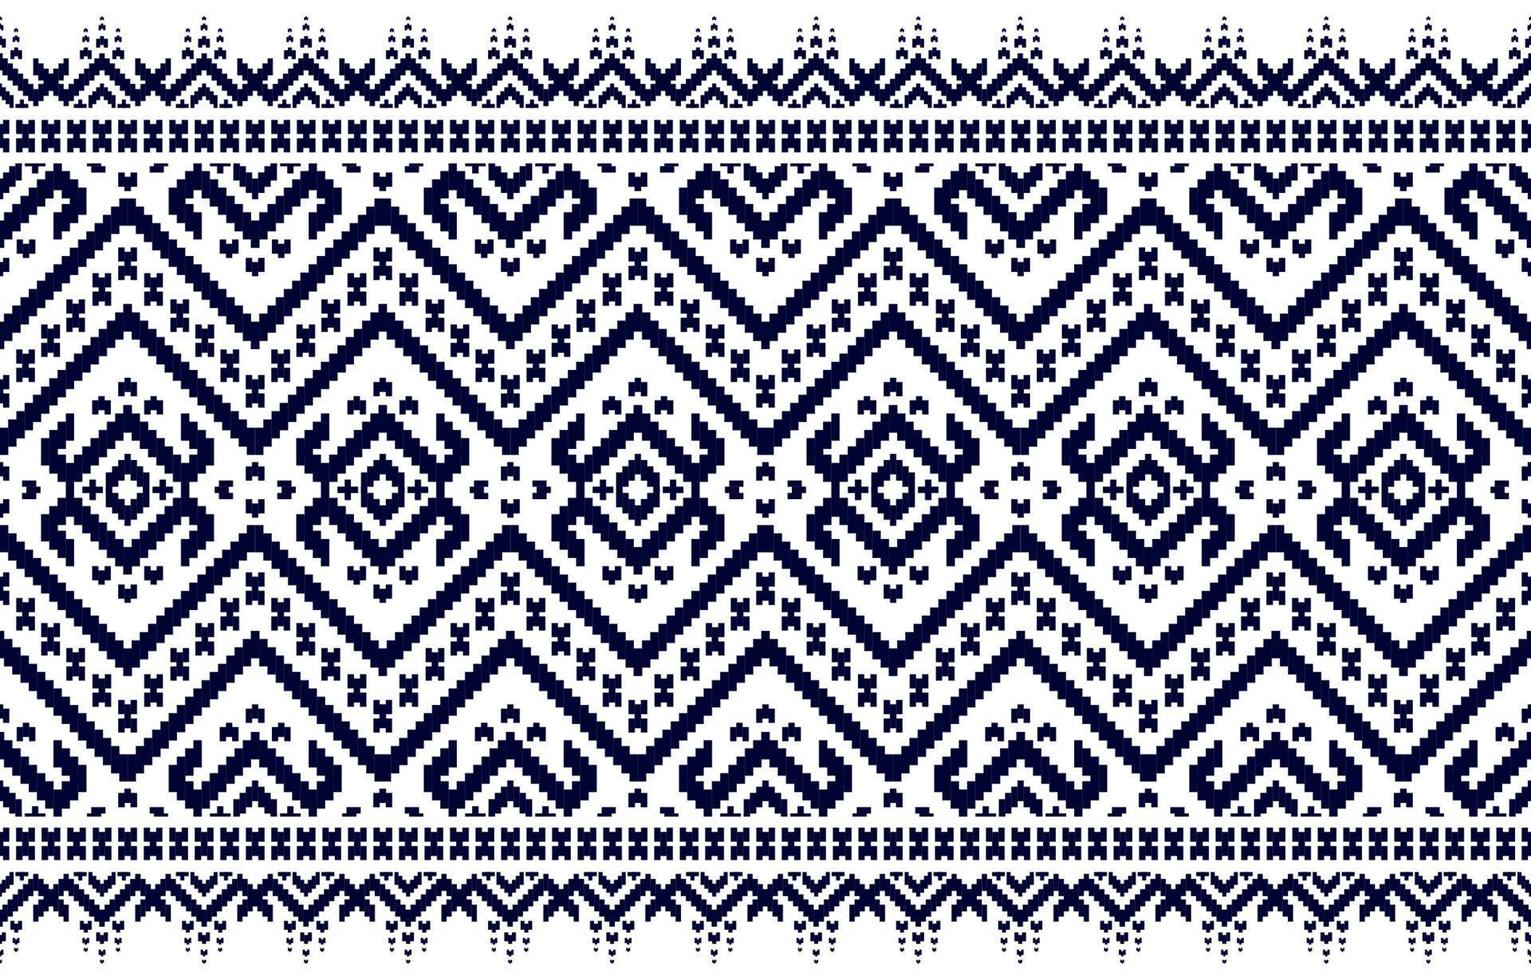 arte de patrón tribal étnico de alfombras. étnico geométrico de patrones sin fisuras tradicional. vector